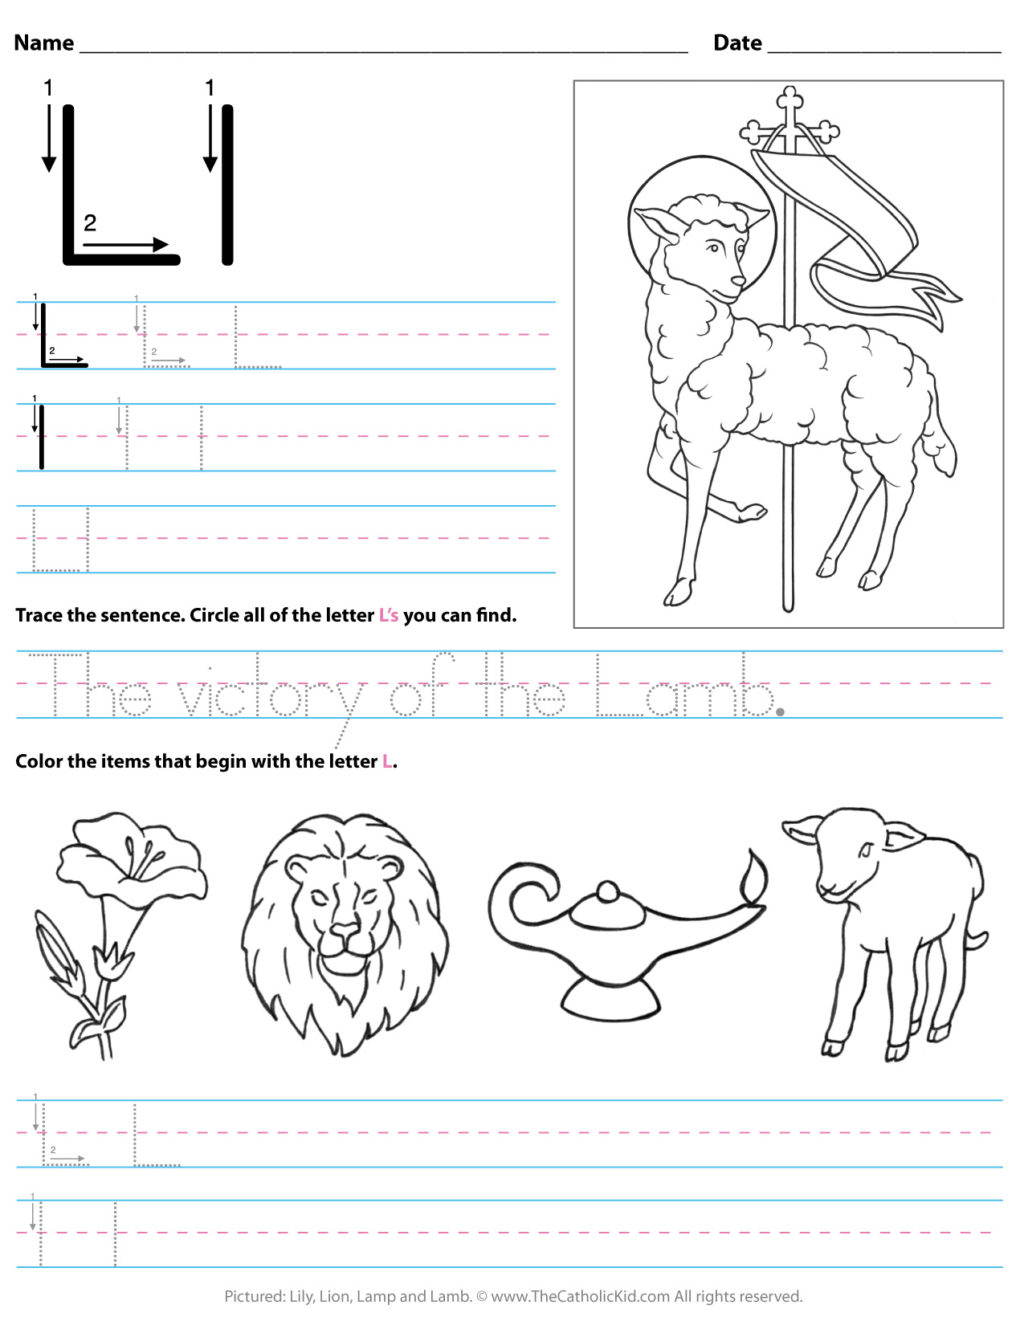 Worksheet ~ Catholic Alphabet Letter Lksheet Preschool regarding Letter Ll Worksheets For Kindergarten